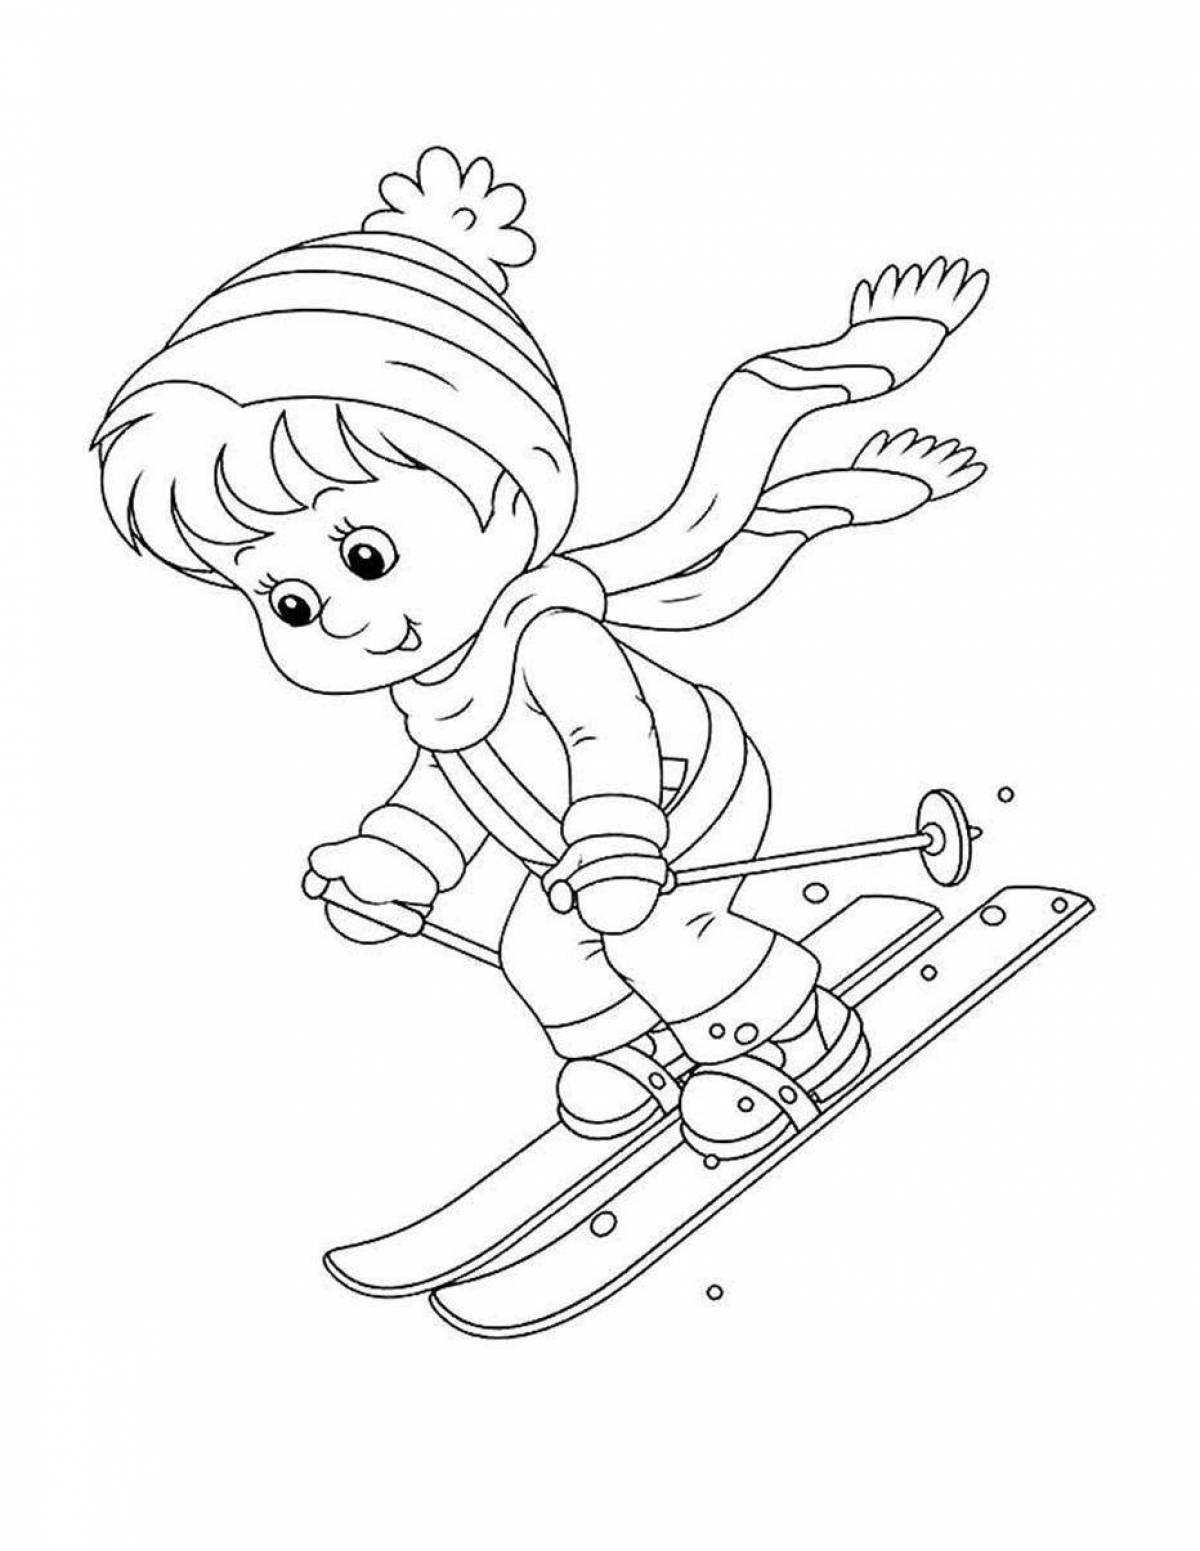 Игривое изображение зимних видов спорта для детей в детском саду